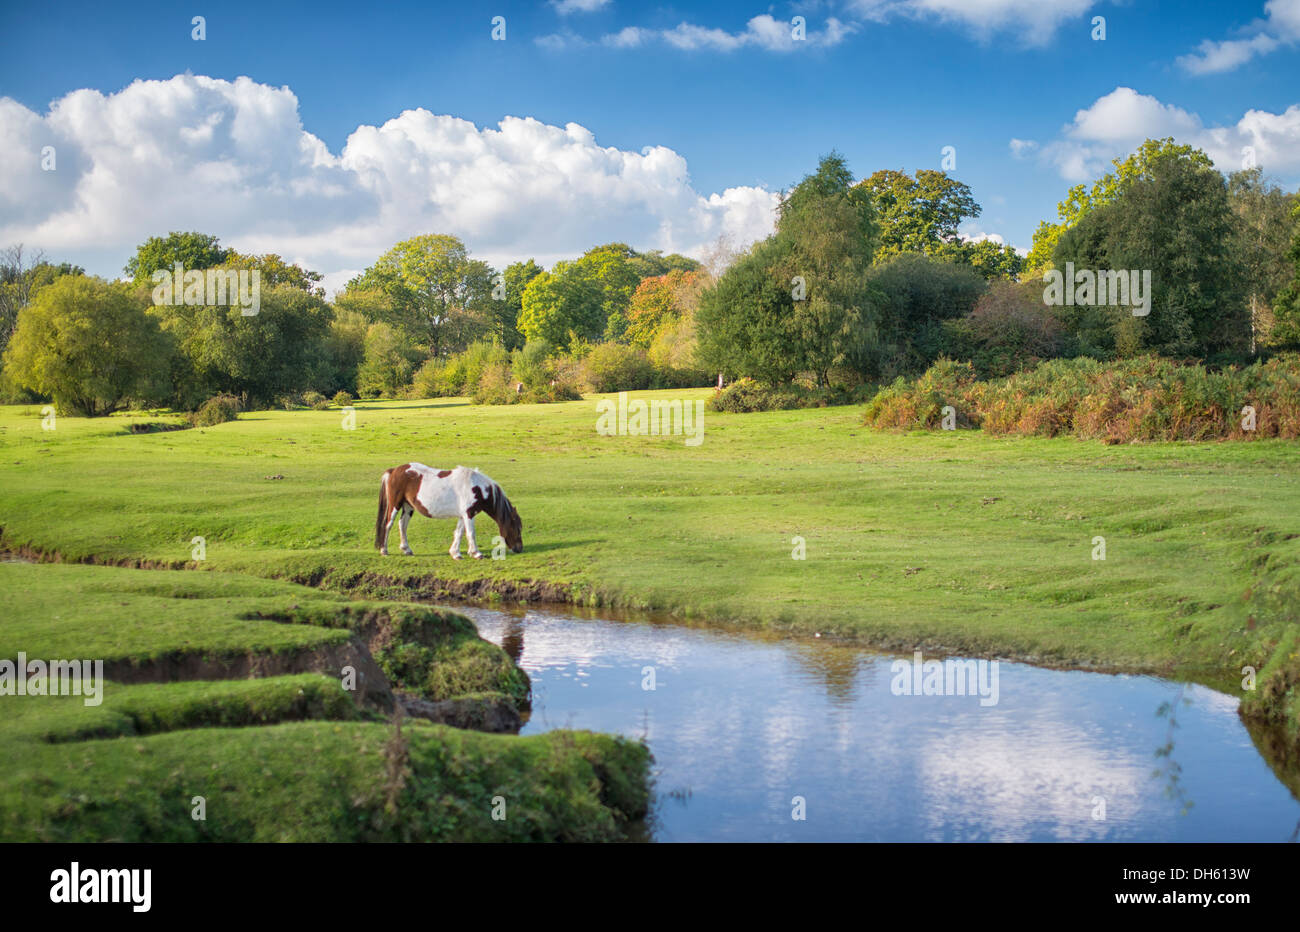 Braun und weiß getuppelte Pferde grasen auf einem grünen Feld mit Bäumen dahinter, blauem Himmel und flauschigen weißen Wolken darüber mit Fluss durch die Mitte Stockfoto